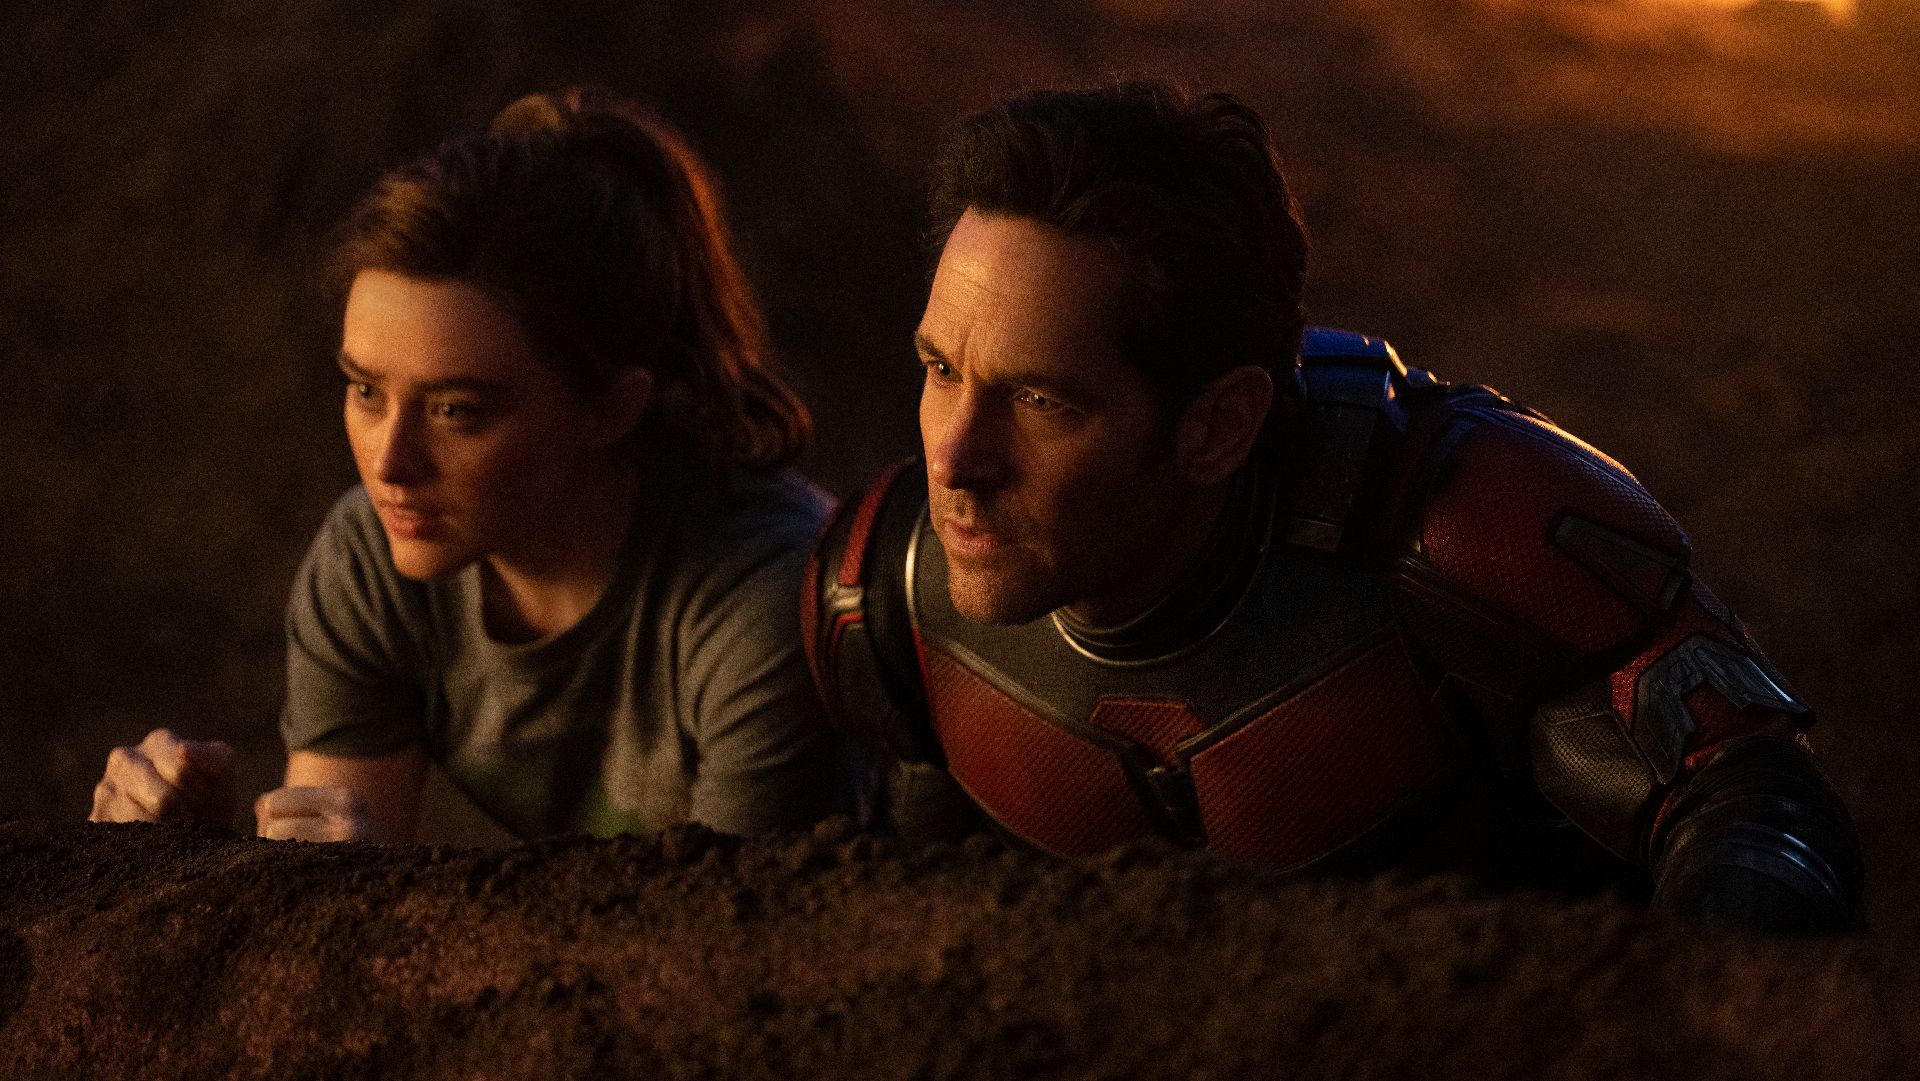 La tercera entrega de "Ant-Man" se podrá ver en cines de América Latina en febrero de este año. (Marvel Studios)